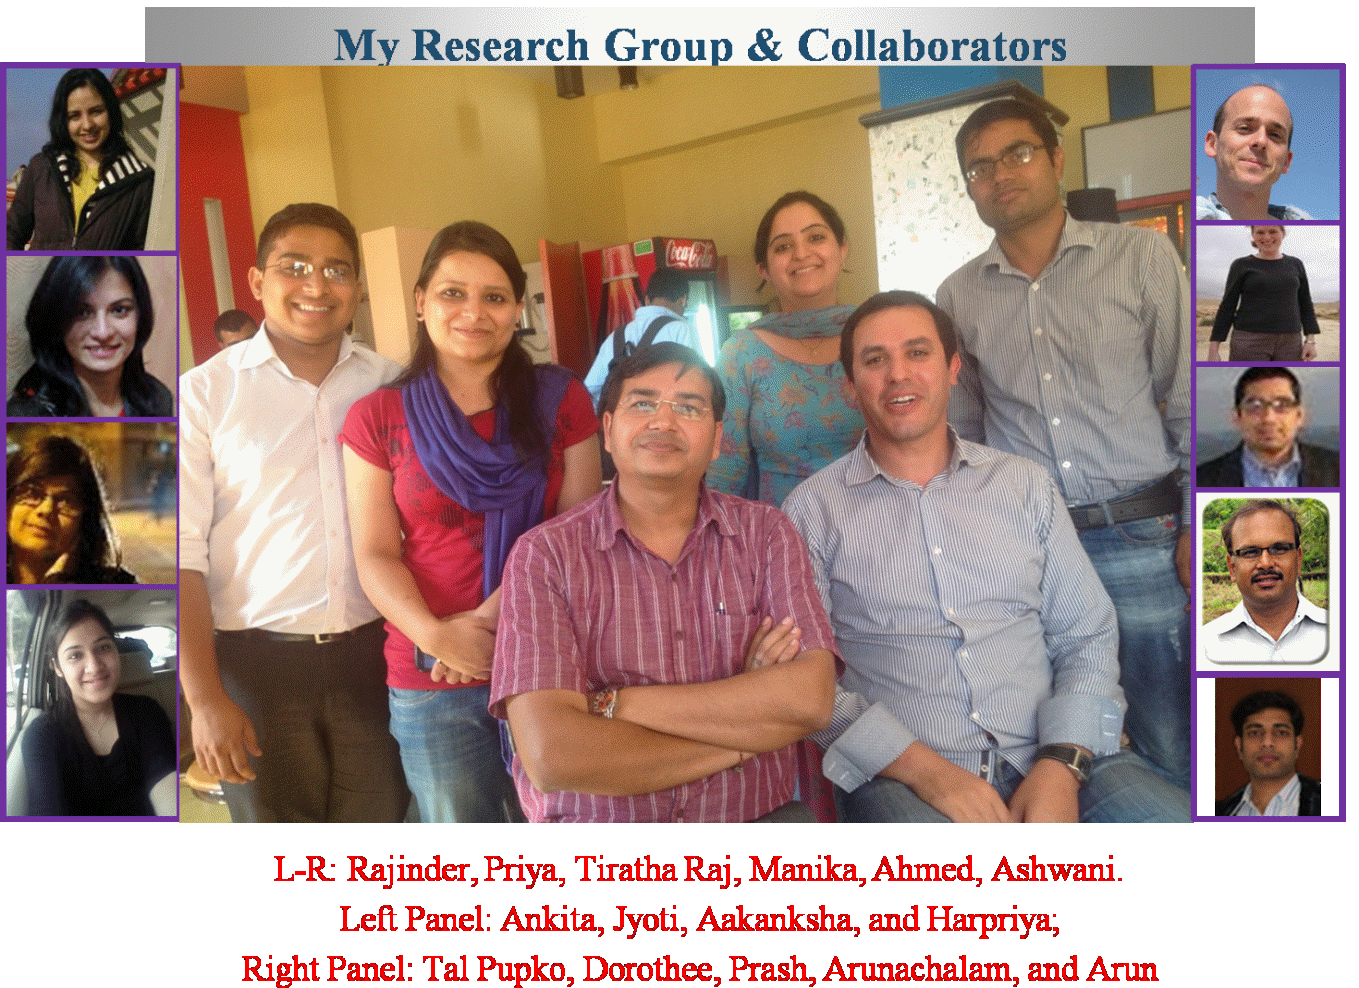 d:\raj_data\juit\raj_research_group\raj_research_group.tif